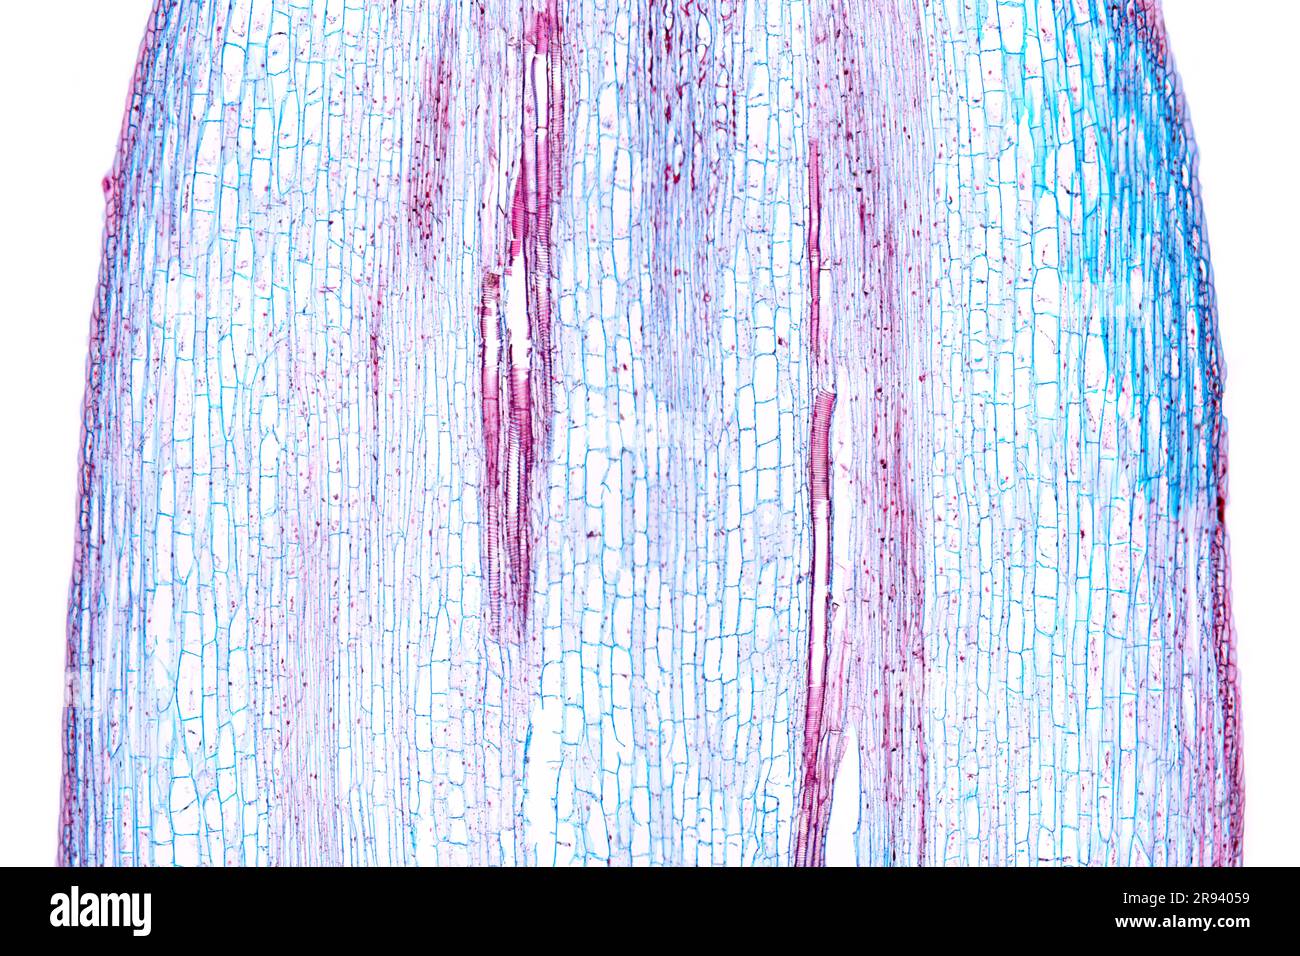 Tige de tournesol, section longitudinale, micrographe léger 20X. Tige d'Helianthus annuus, sous microscope léger. Coloration à l'hématoxyline-éosine. Banque D'Images